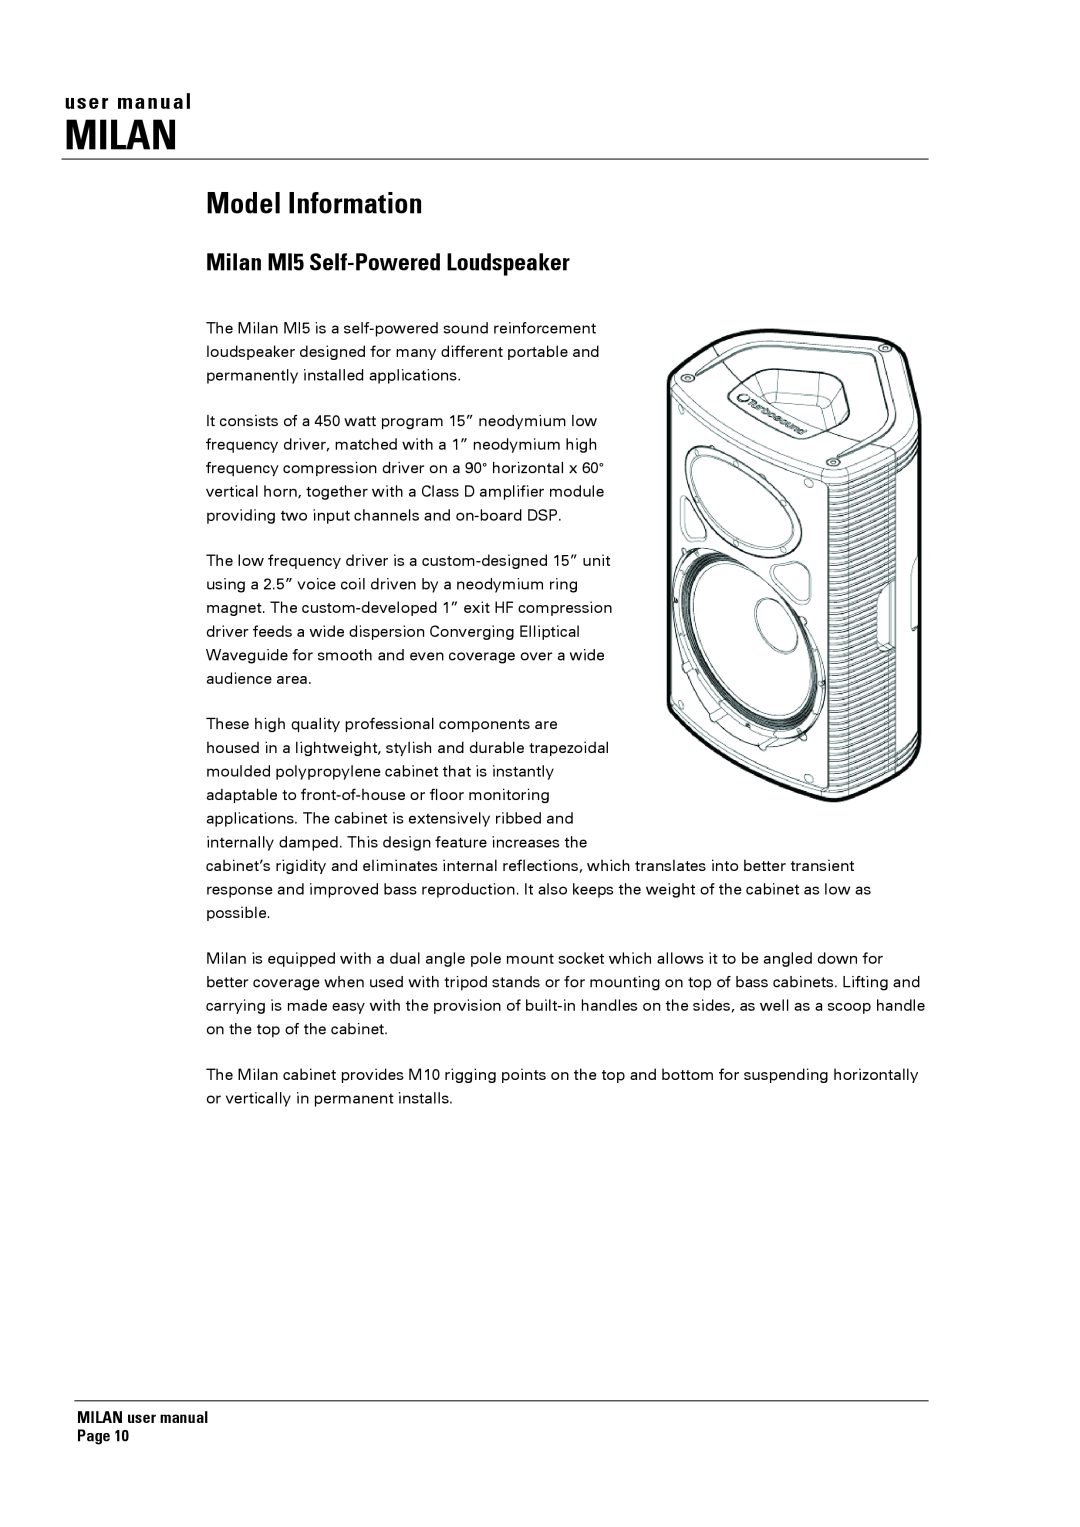 Turbosound Model Information, Milan MI5 Self-PoweredLoudspeaker, MILAN user manual Page 